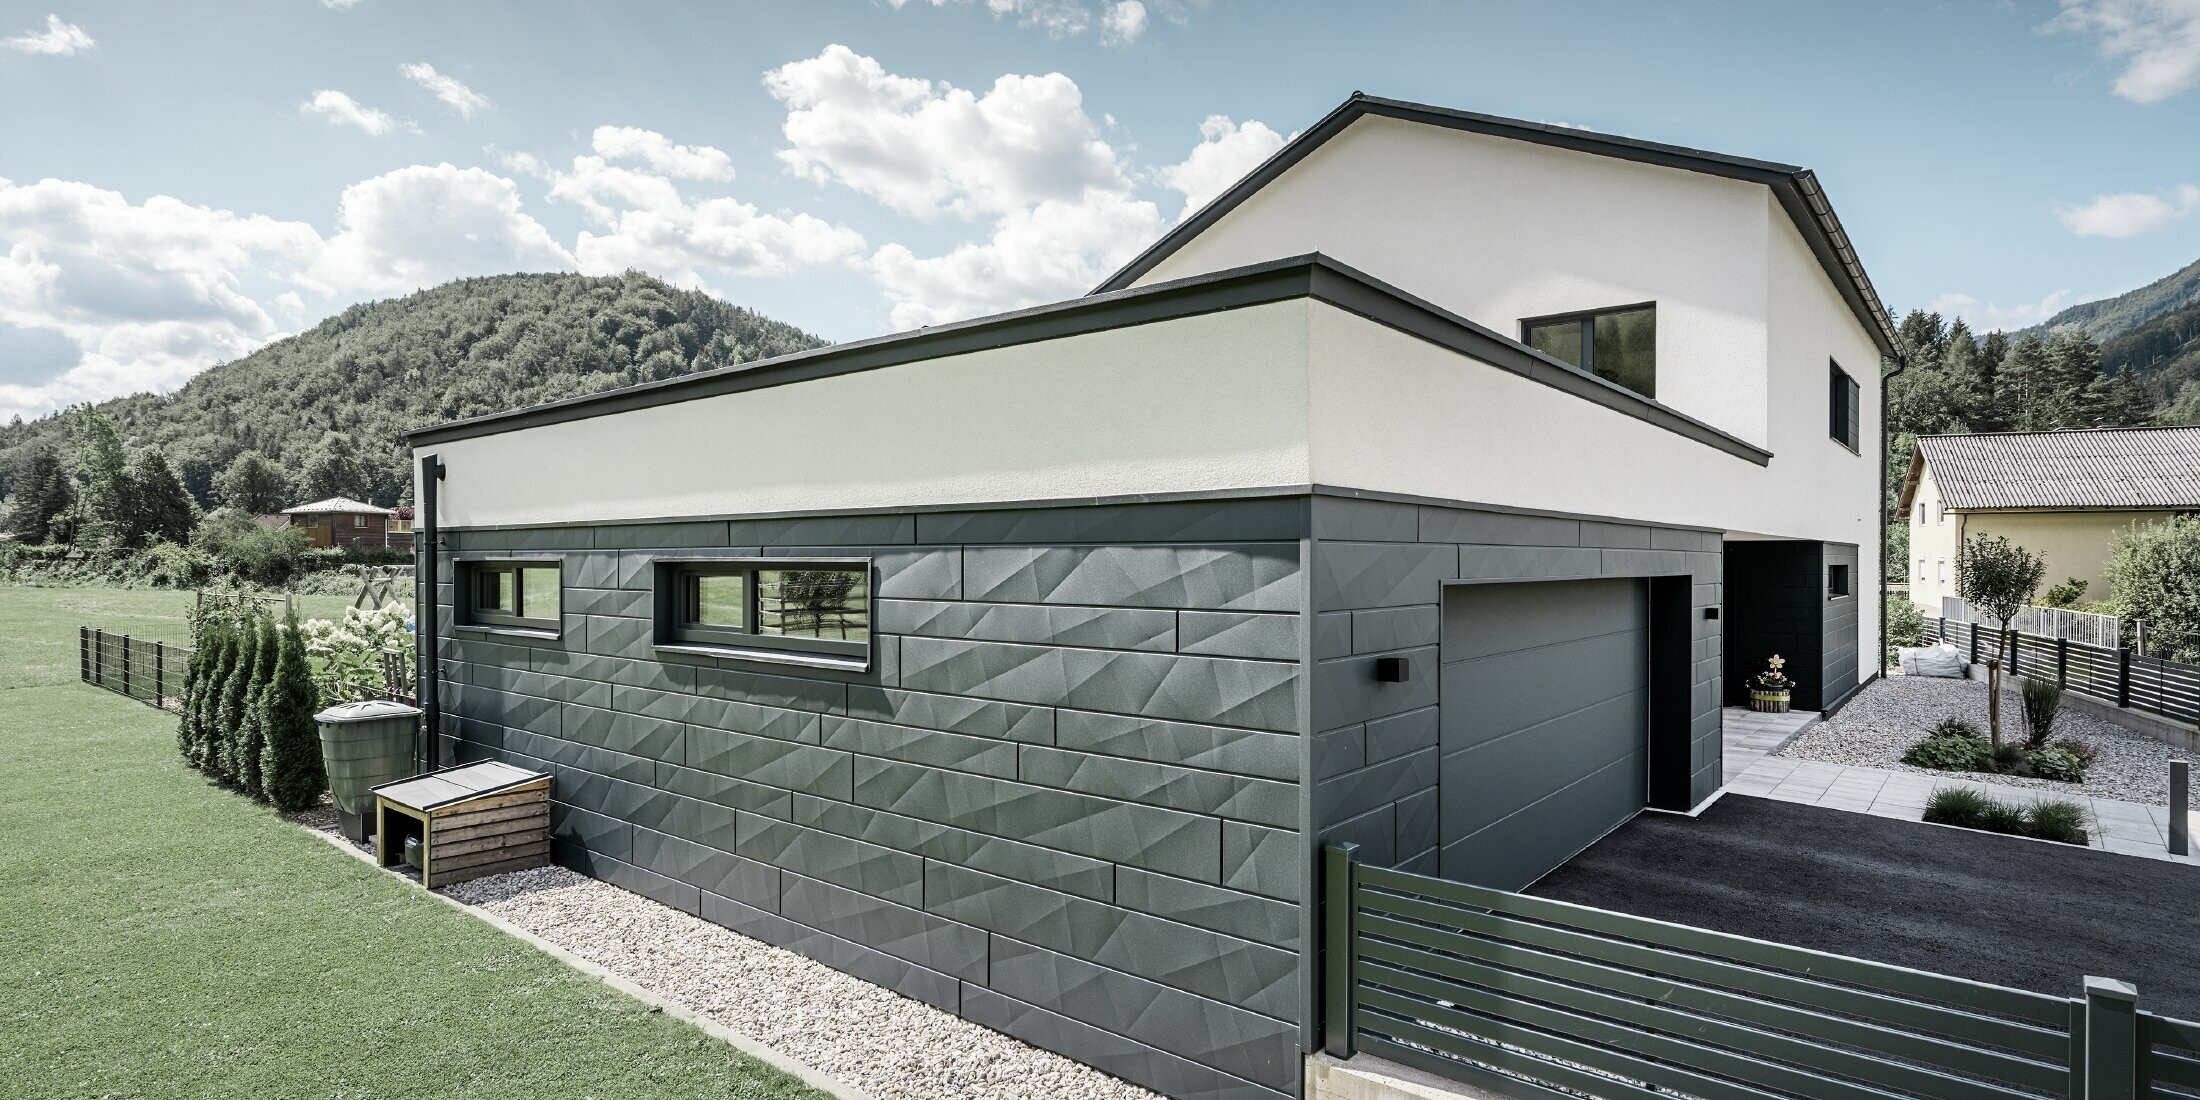 Modernes Einfamilienhaus und Garage mit einer Siding.X Fassade in P.10 Anthrazit. Es befindet sich in einer ländlichen Umgebung.